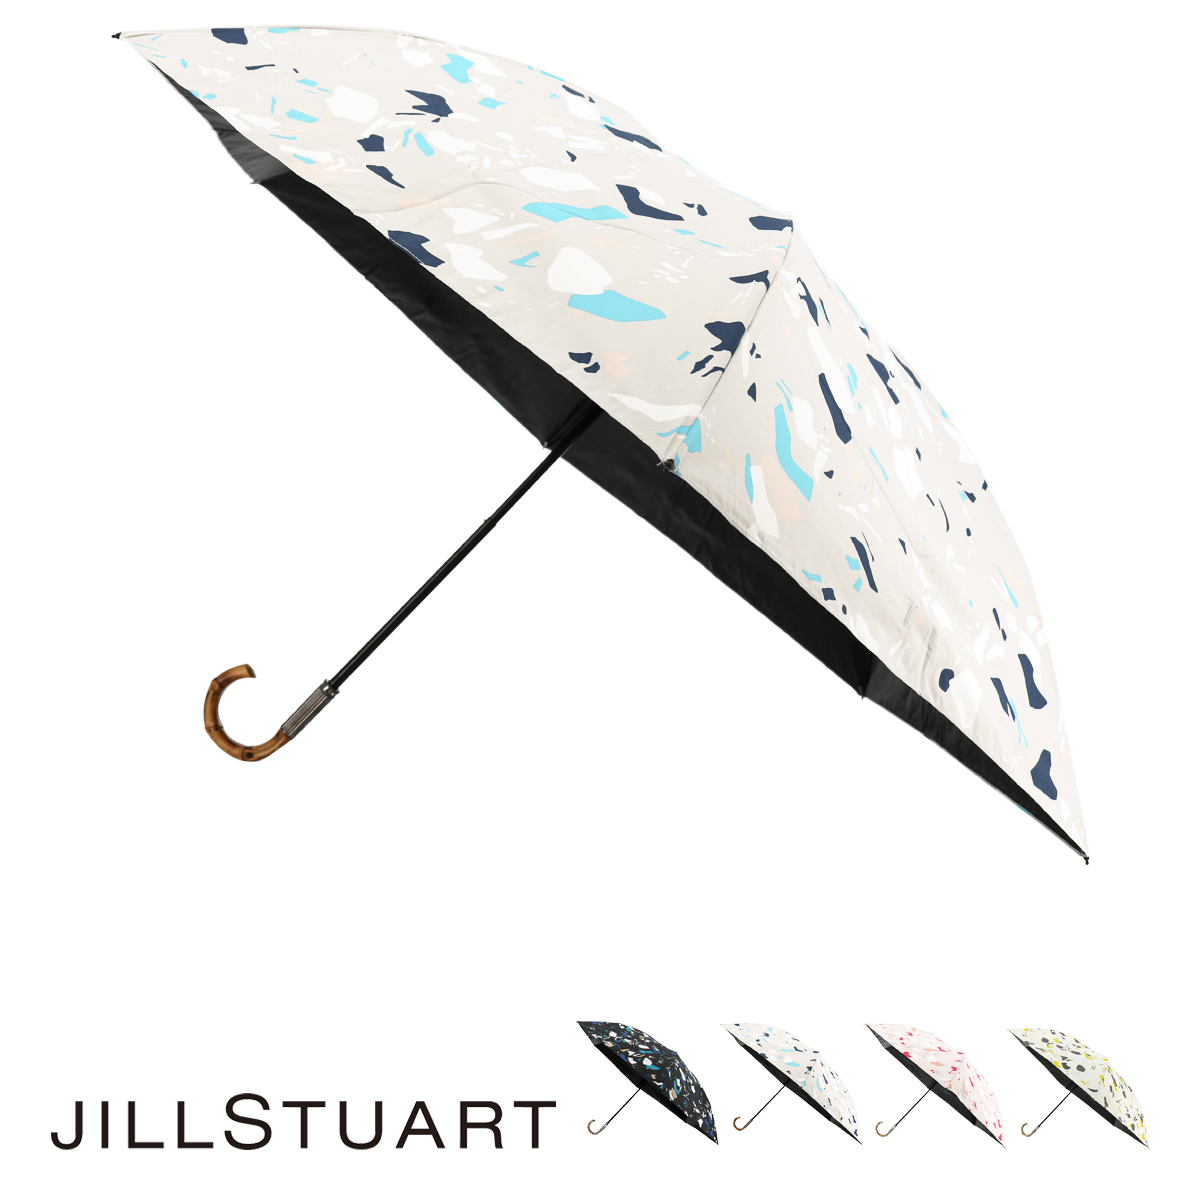 ジルスチュアート 折りたたみ傘 レディース 1JI 17737-37 JILLSTUART ギフト プレゼント 晴雨兼用 日傘 雨傘 UVカット 遮光  遮熱 軽量 ブランド 90-99cm